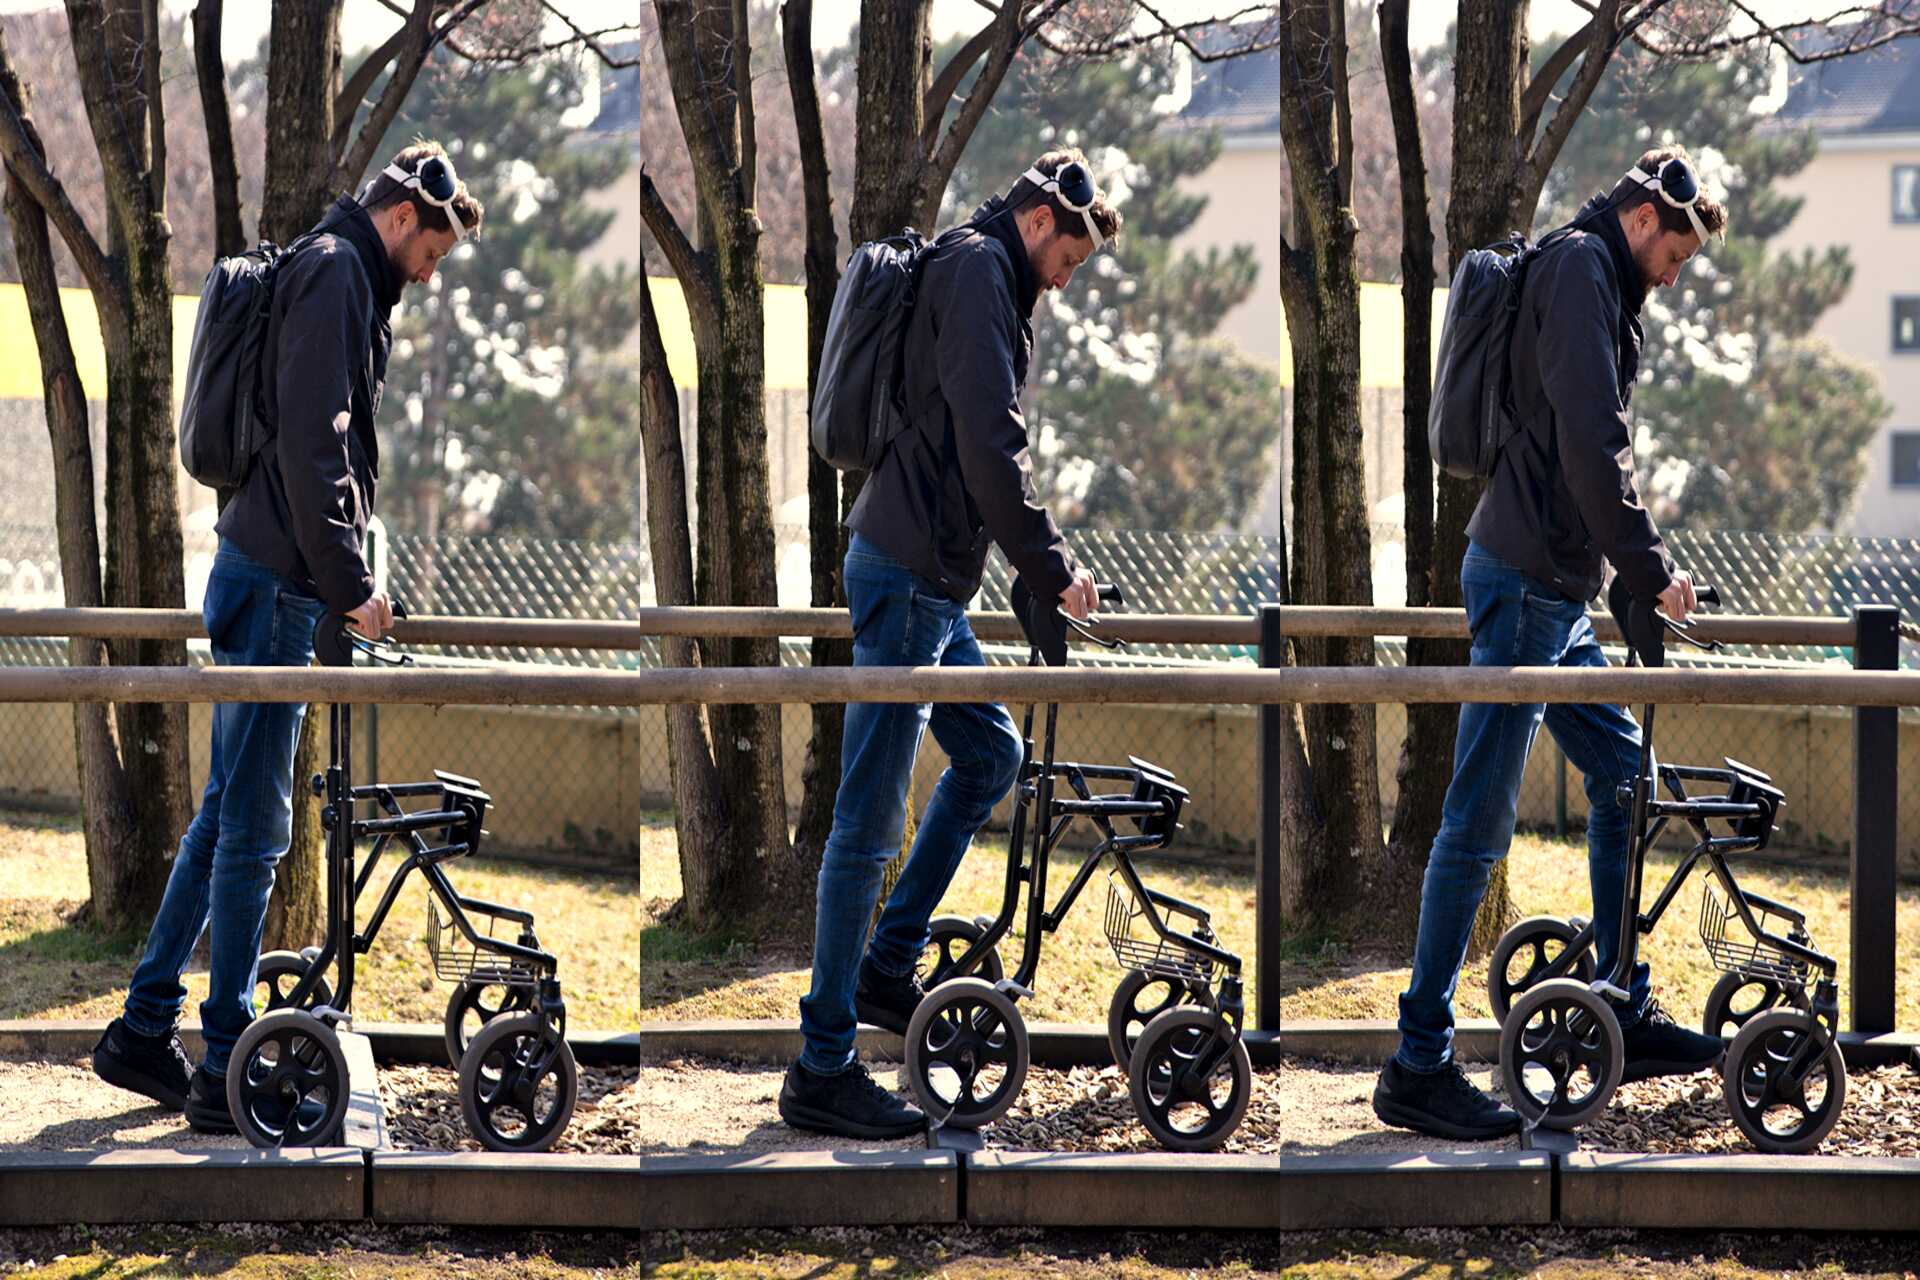 Περπάτημα χάρη στη σκέψη: Gert-Jan Oskam, ο οποίος έμεινε παράλυτος στα κάτω άκρα μετά από ένα ατύχημα με ποδήλατο και που άρχισε να περπατά ξανά χάρη σε μια ψηφιακή γέφυρα μεταξύ του εγκεφάλου και του νωτιαίου μυελού, στο Πανεπιστήμιο της Λωζάνης